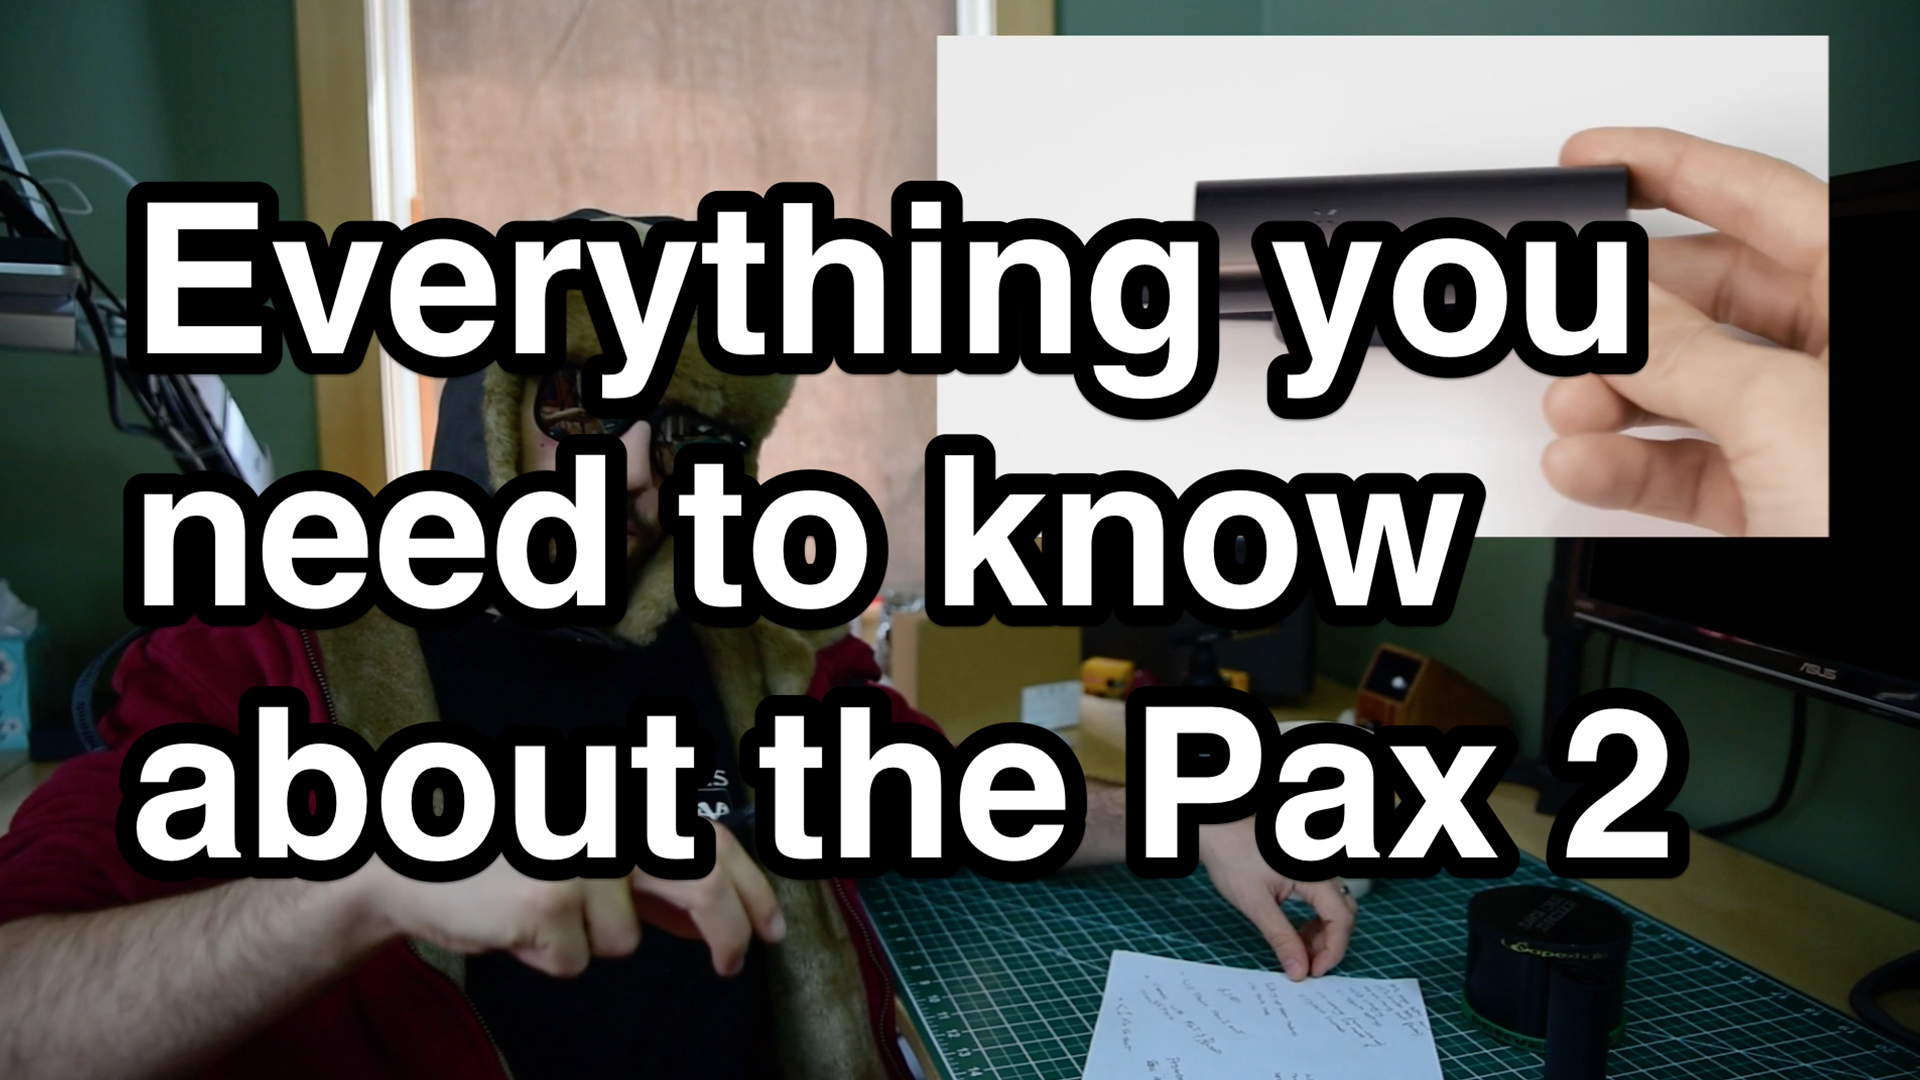 Pax 2 Announced